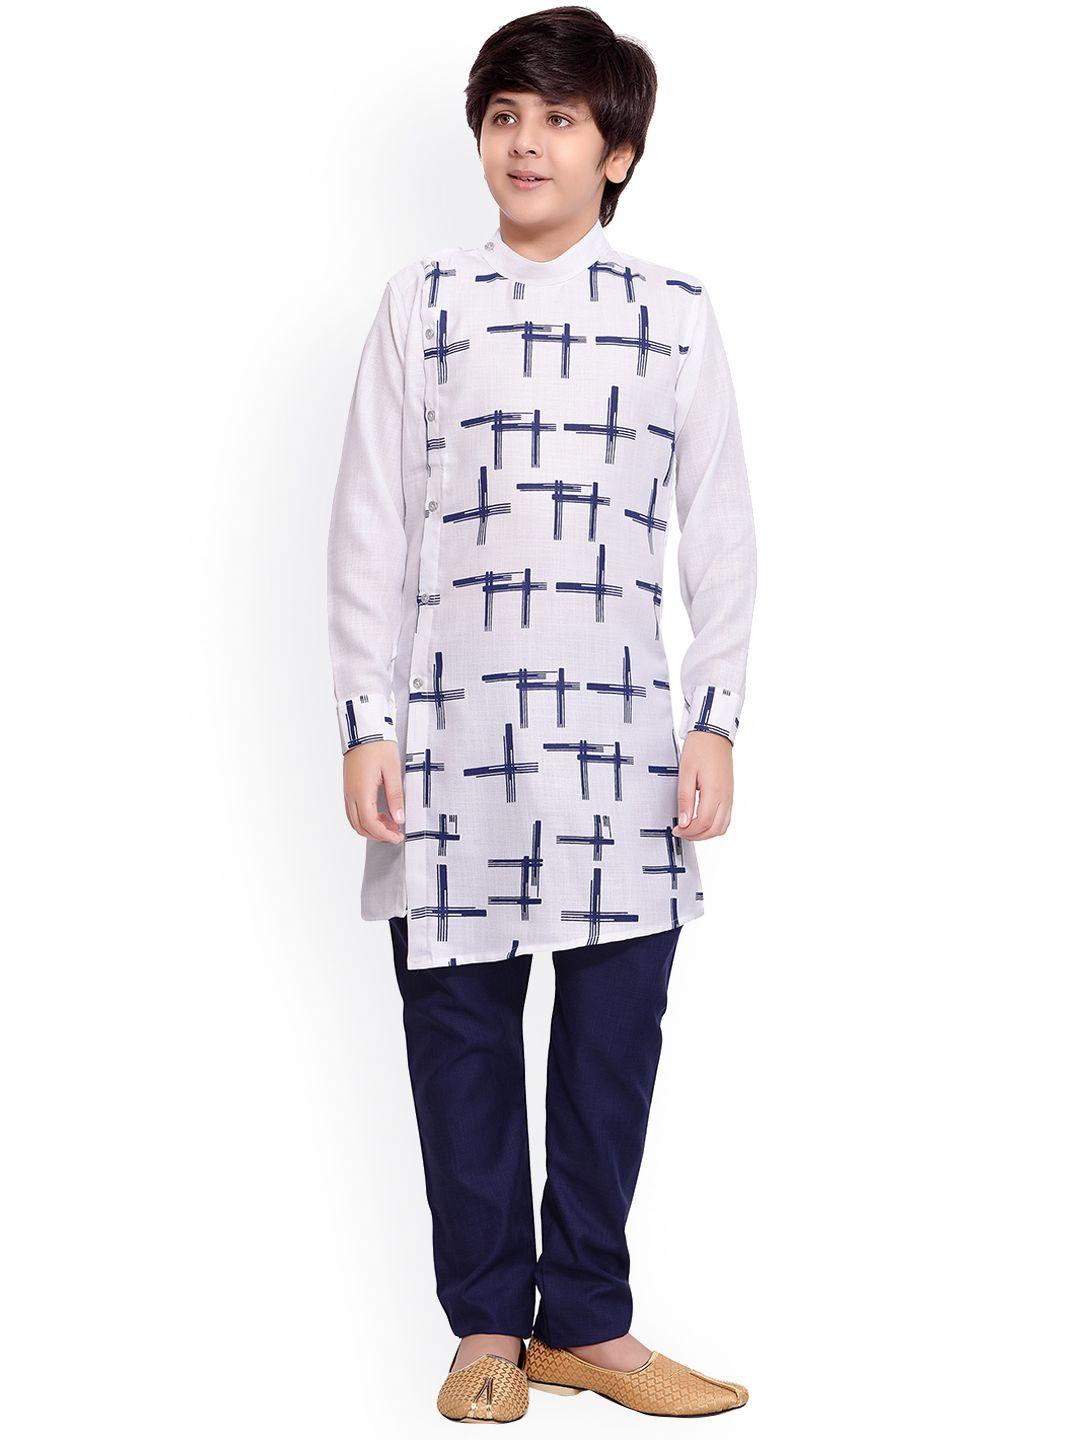 jeetethnics boys white printed regular kurta with pyjamas